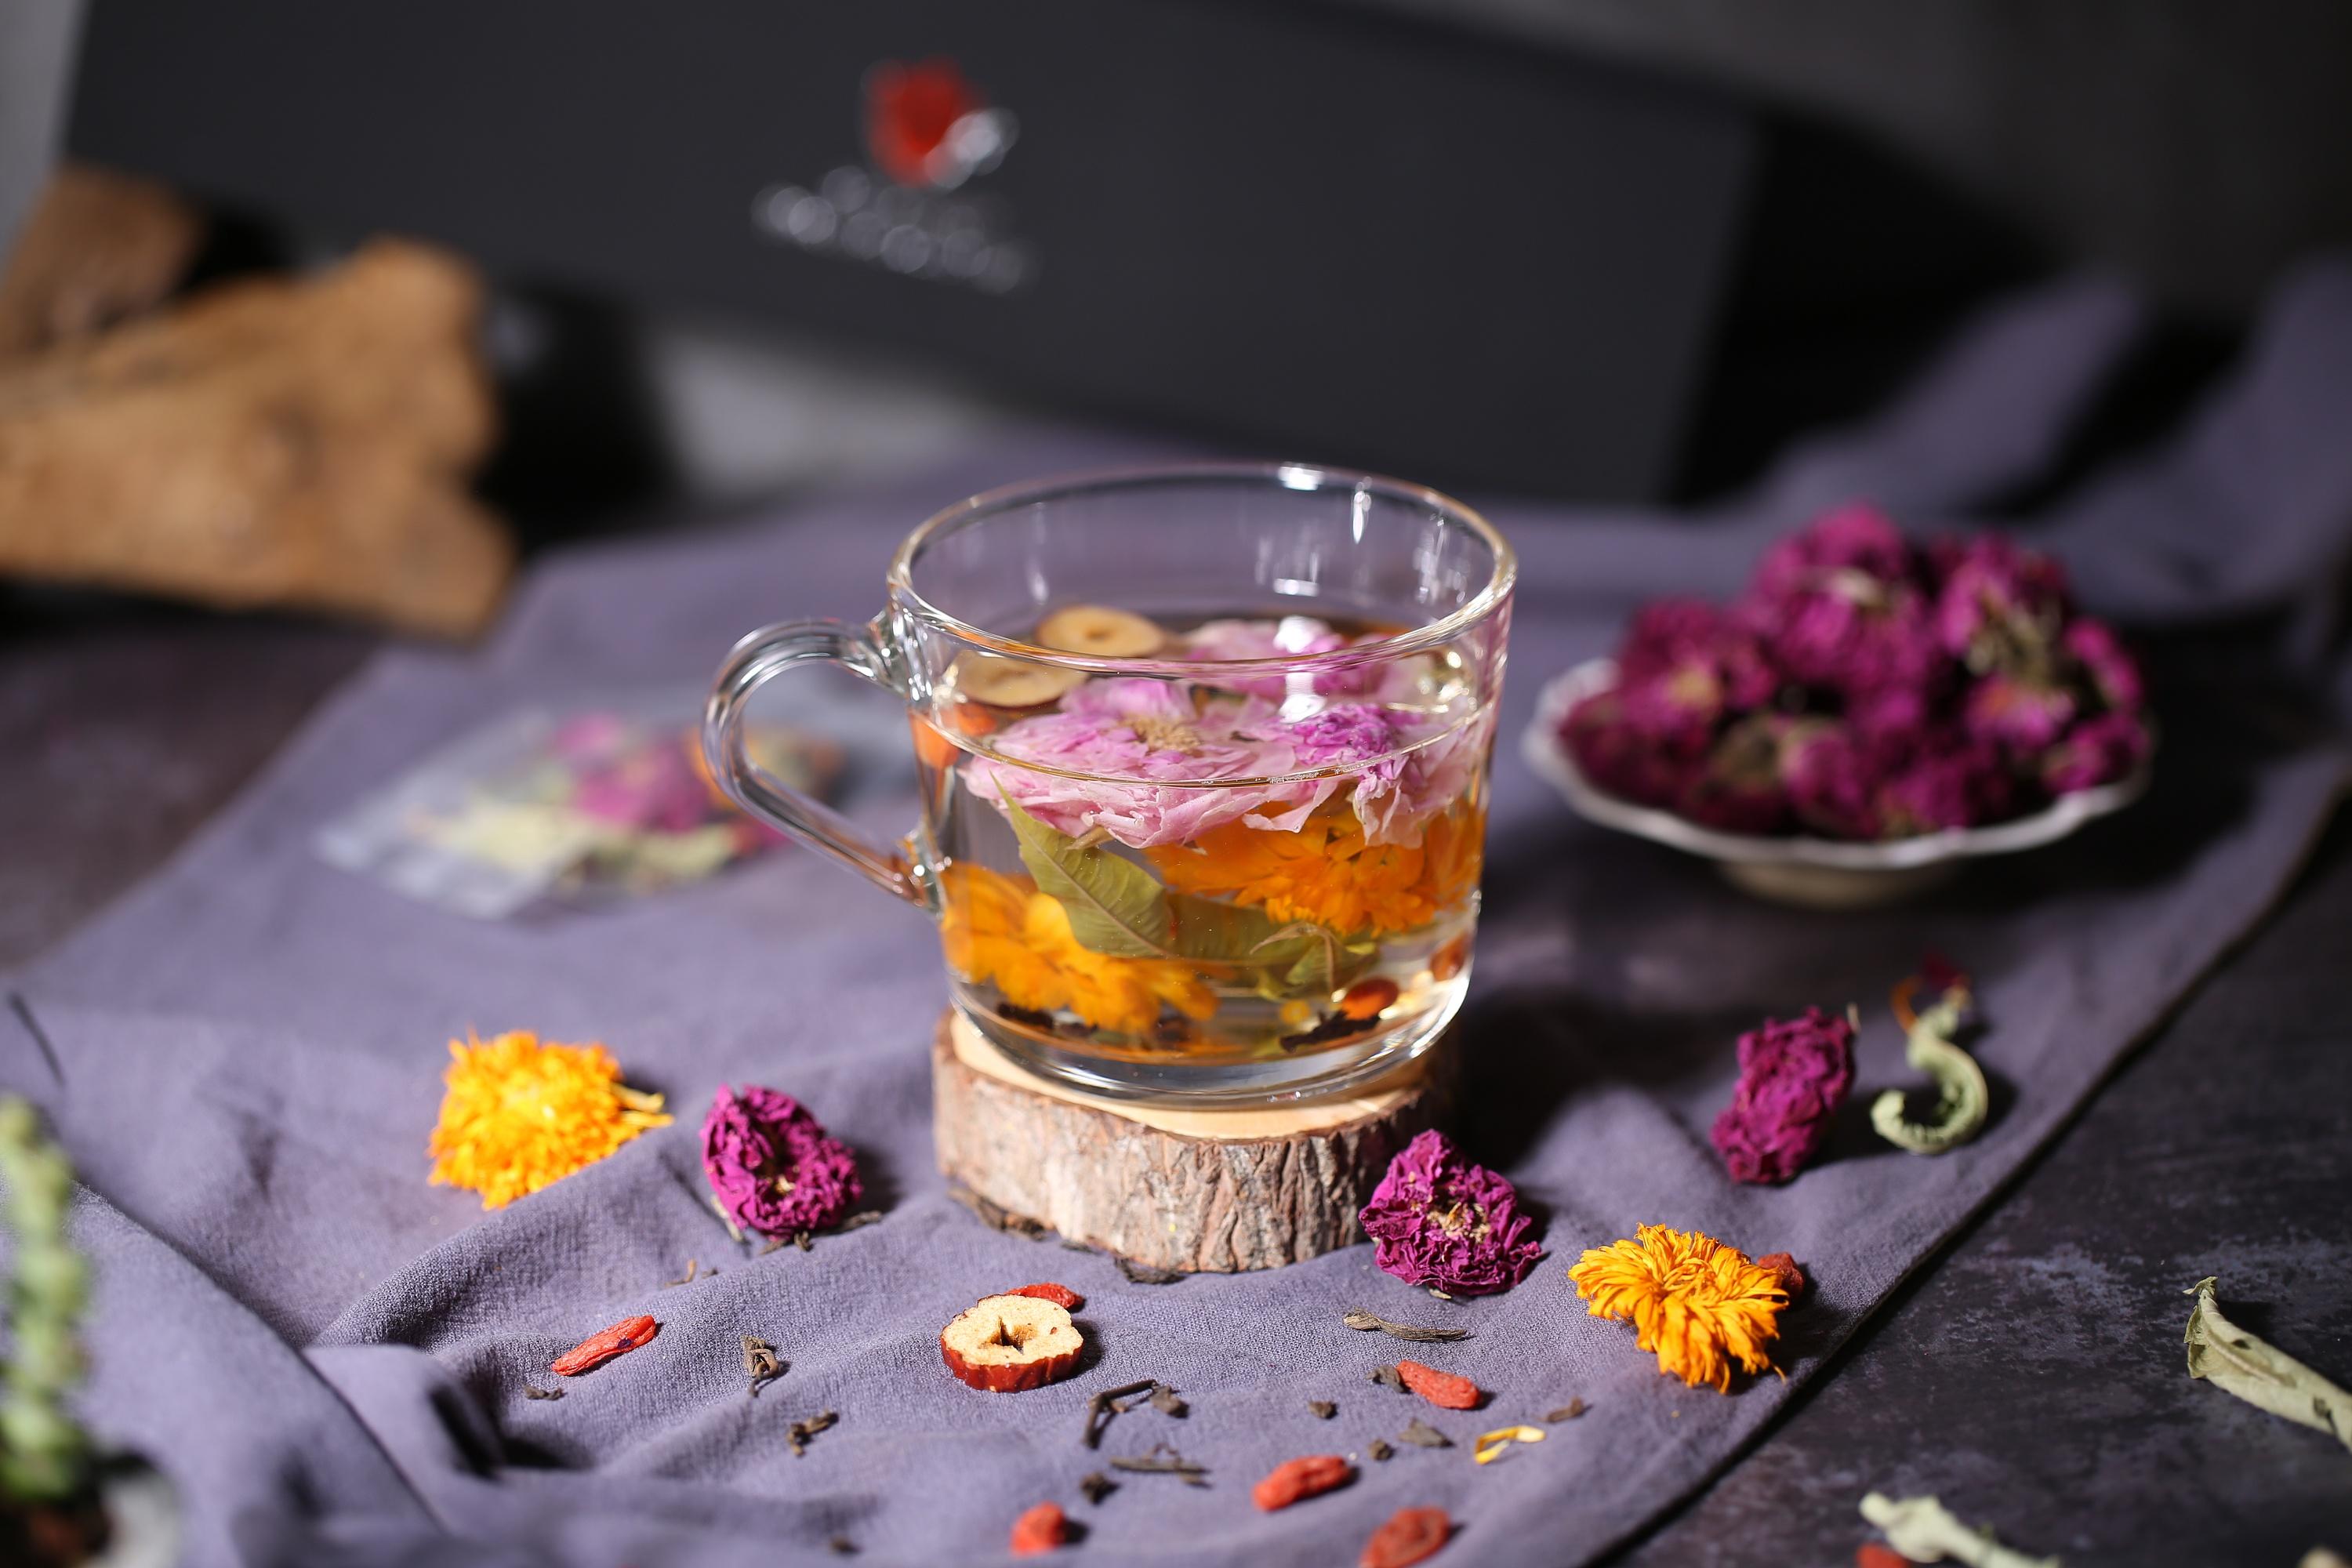 花茶是中国特有的一类再加工茶,花茶的种类丰富